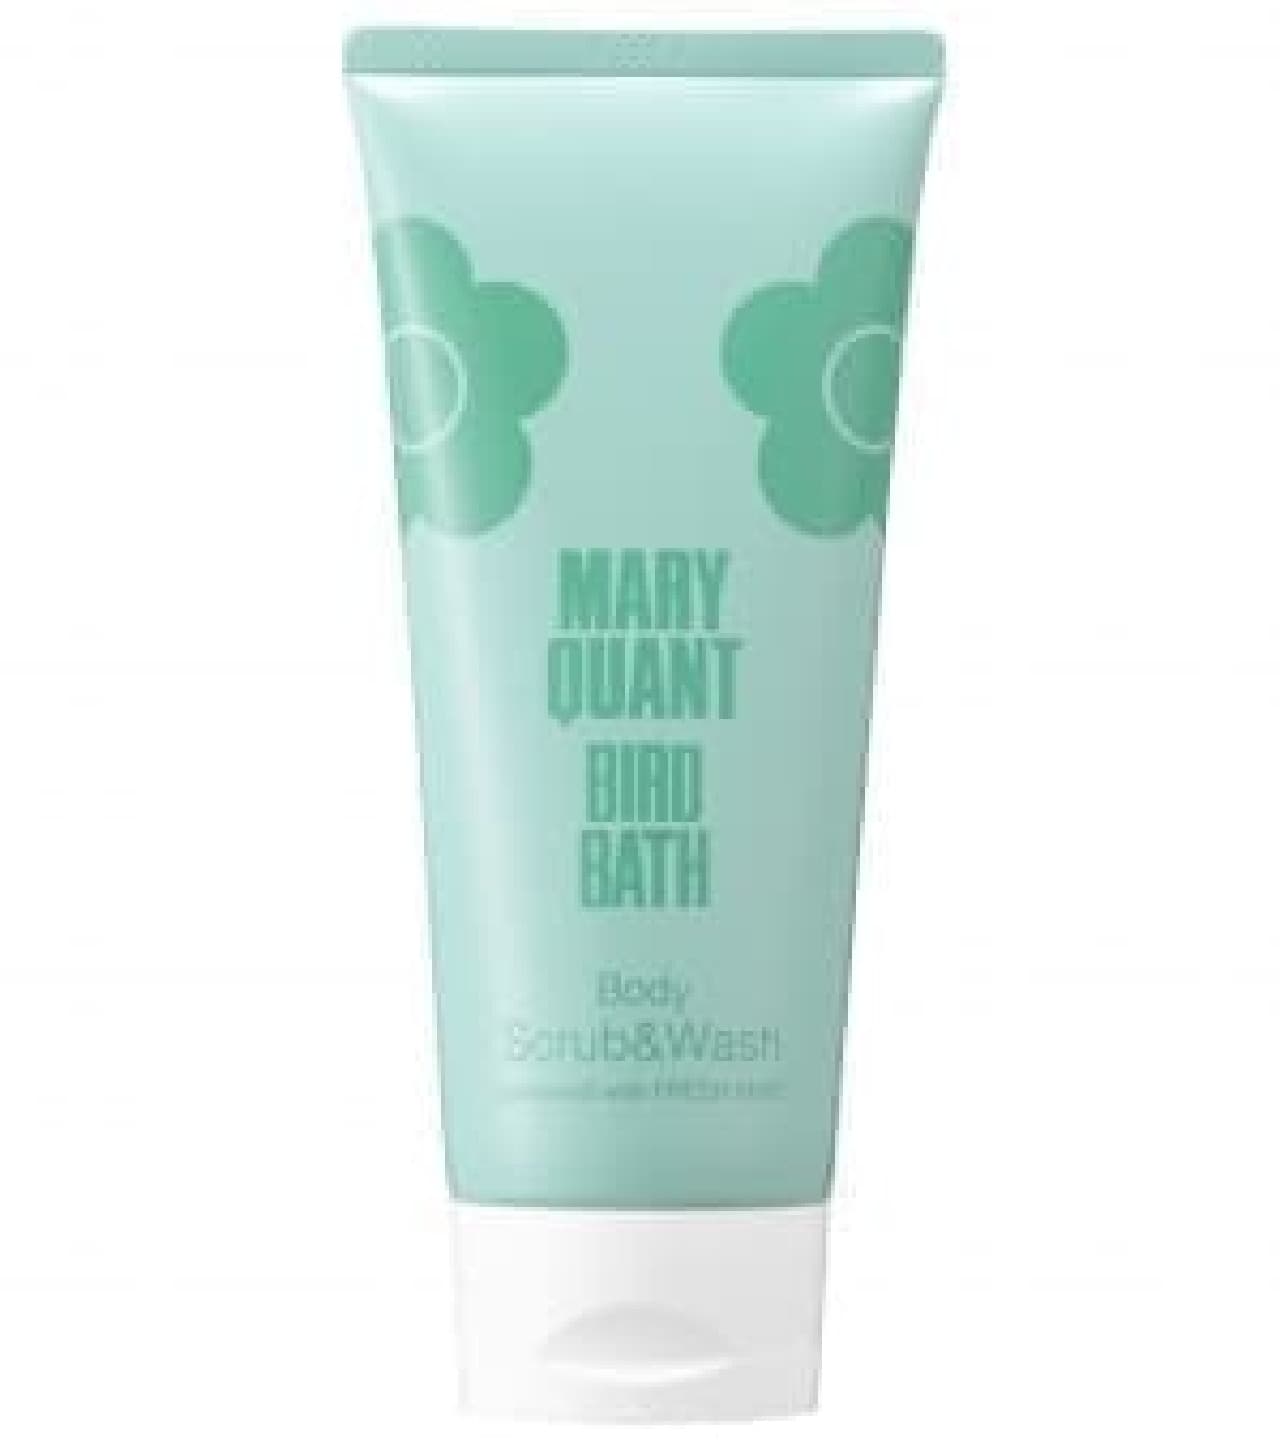 Mary Quant "Bird Bath Body Scrub & Wash"